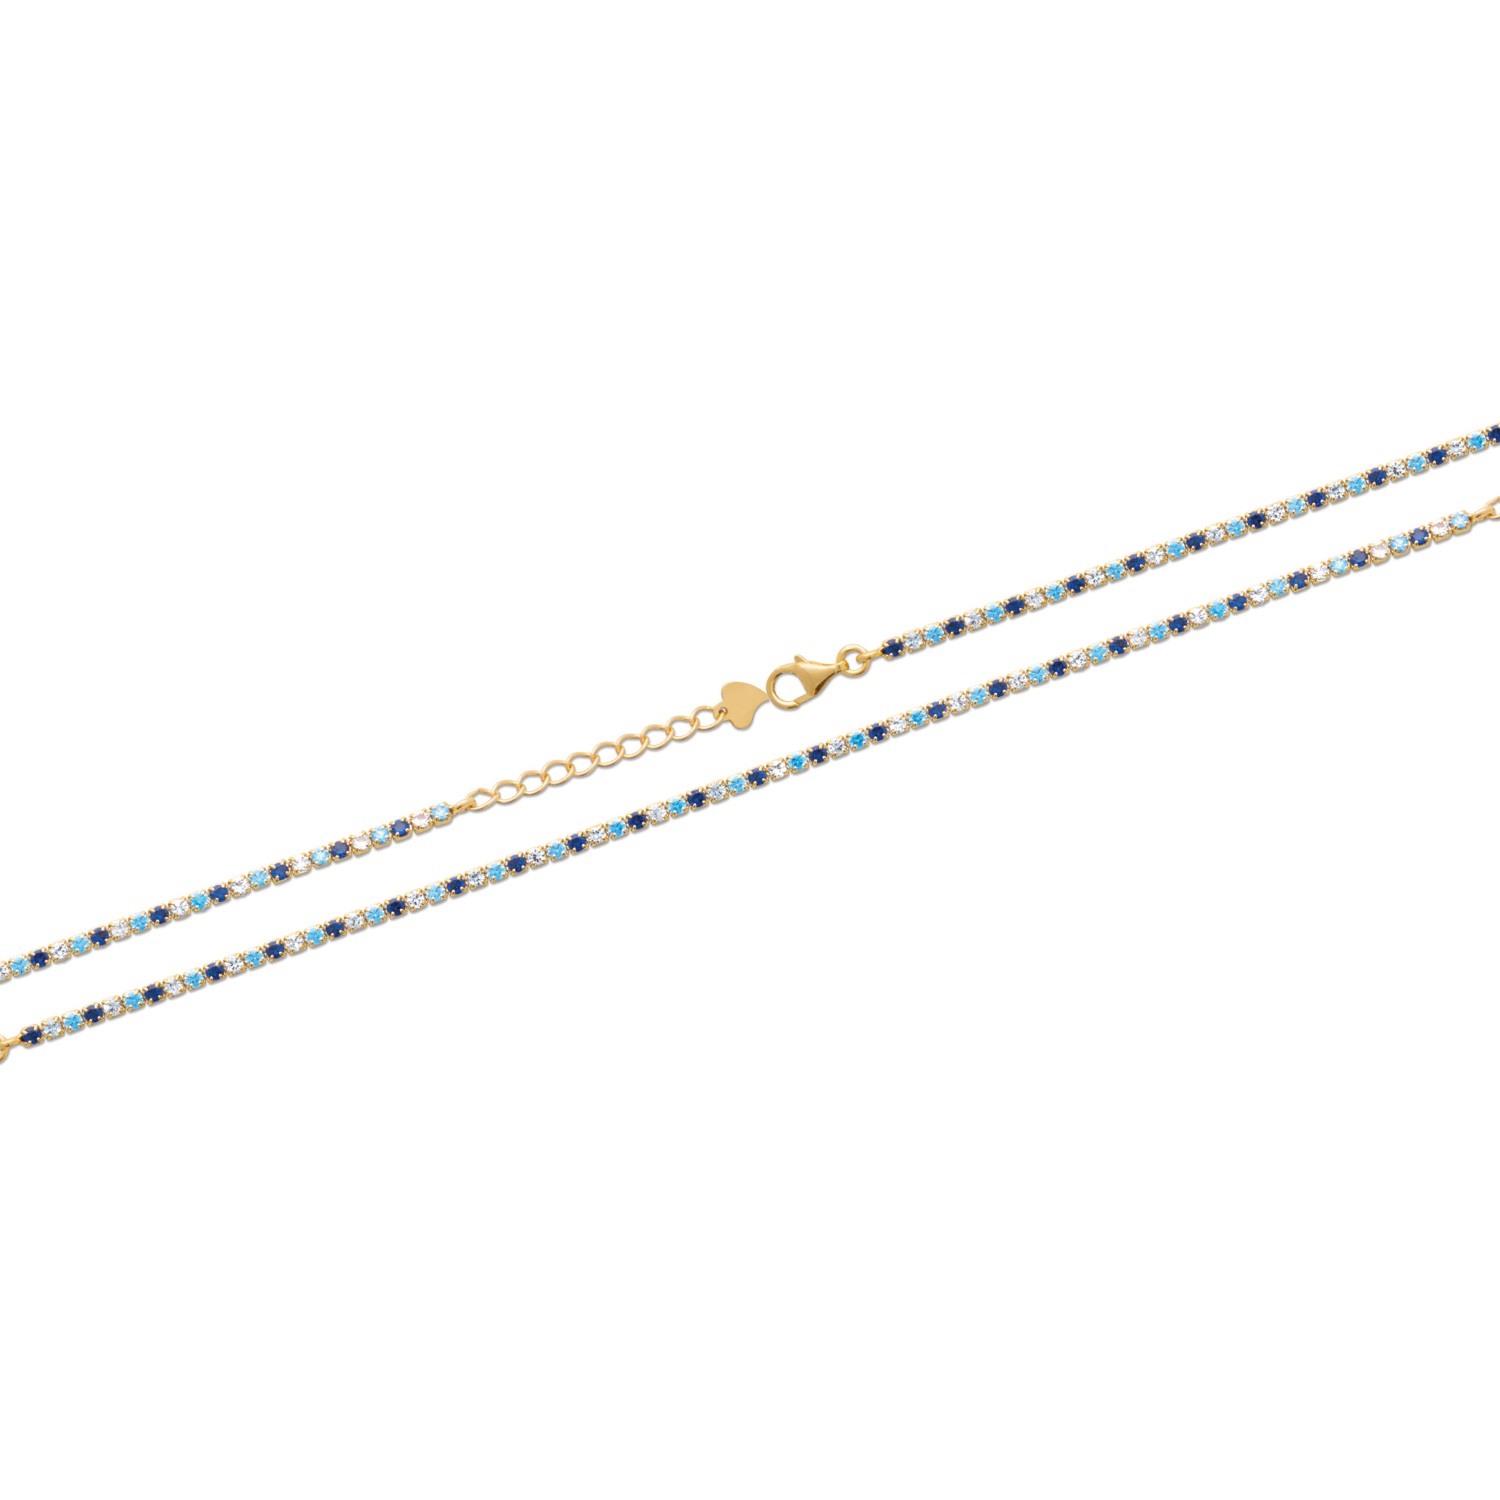 Bracelet en plaqué or jaune 18 carats pavé de pierres synthétiques de couleur bleue et transparente.<br/>Fermoir mousqueton avec rallonge de 3 cm. Strass  Adolescent Adulte Femme Fille Indémodable 